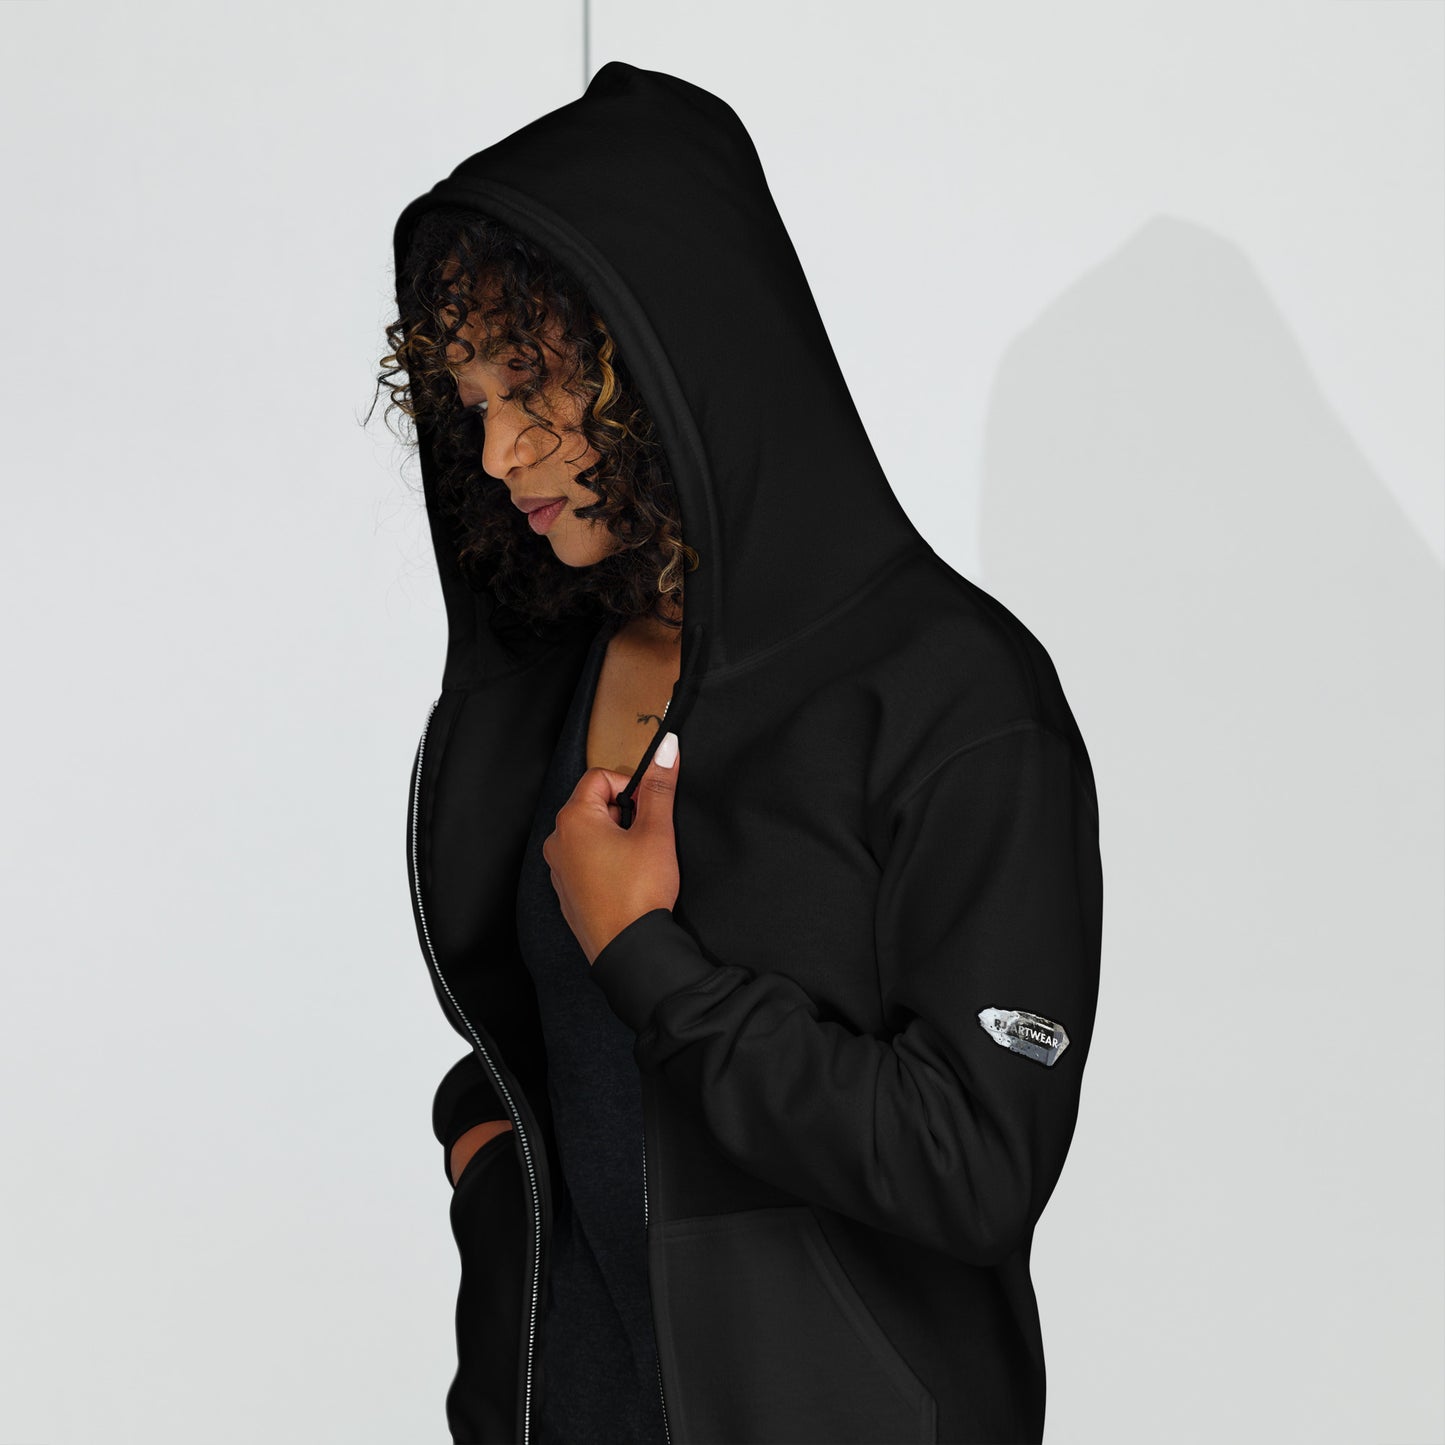 Chrysocolla Drawing - Unisex heavy blend zip hoodie